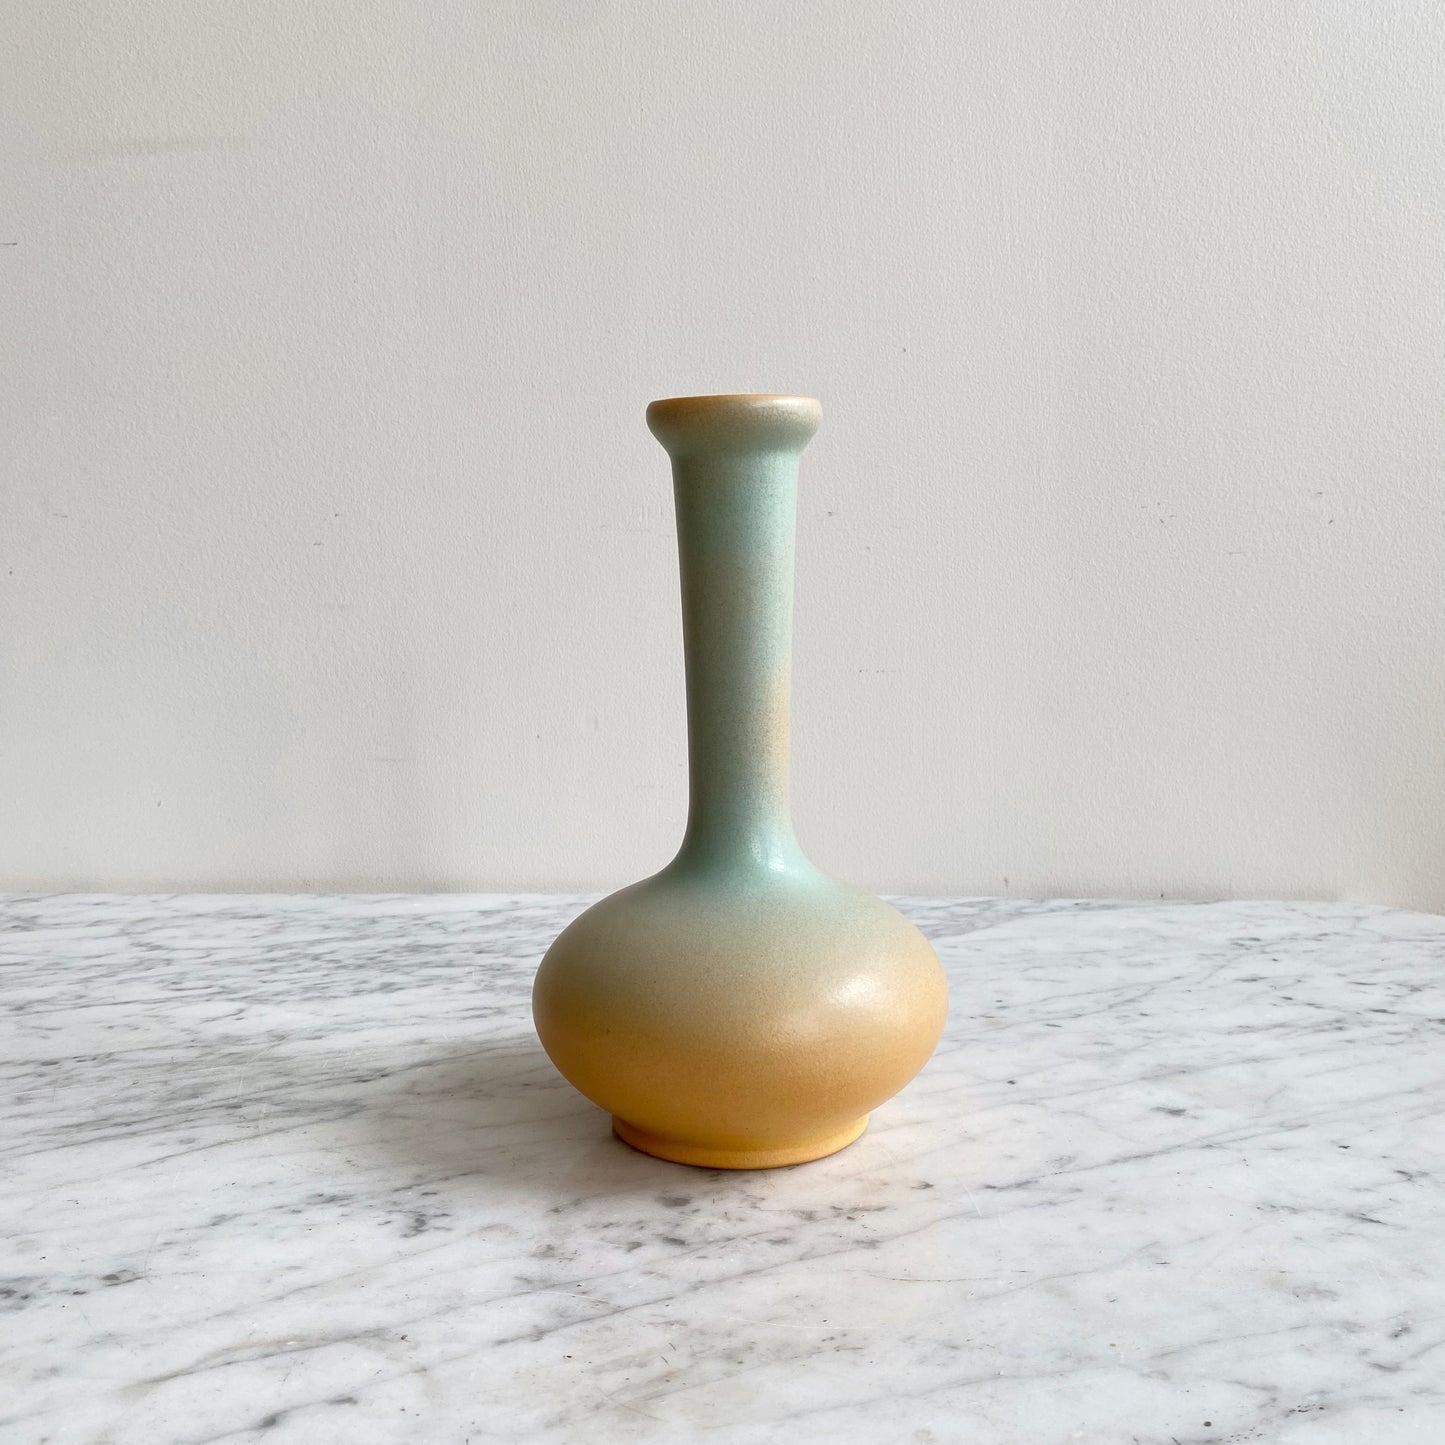 Vintage Ceramic Vase, Blue + Orange Ombré